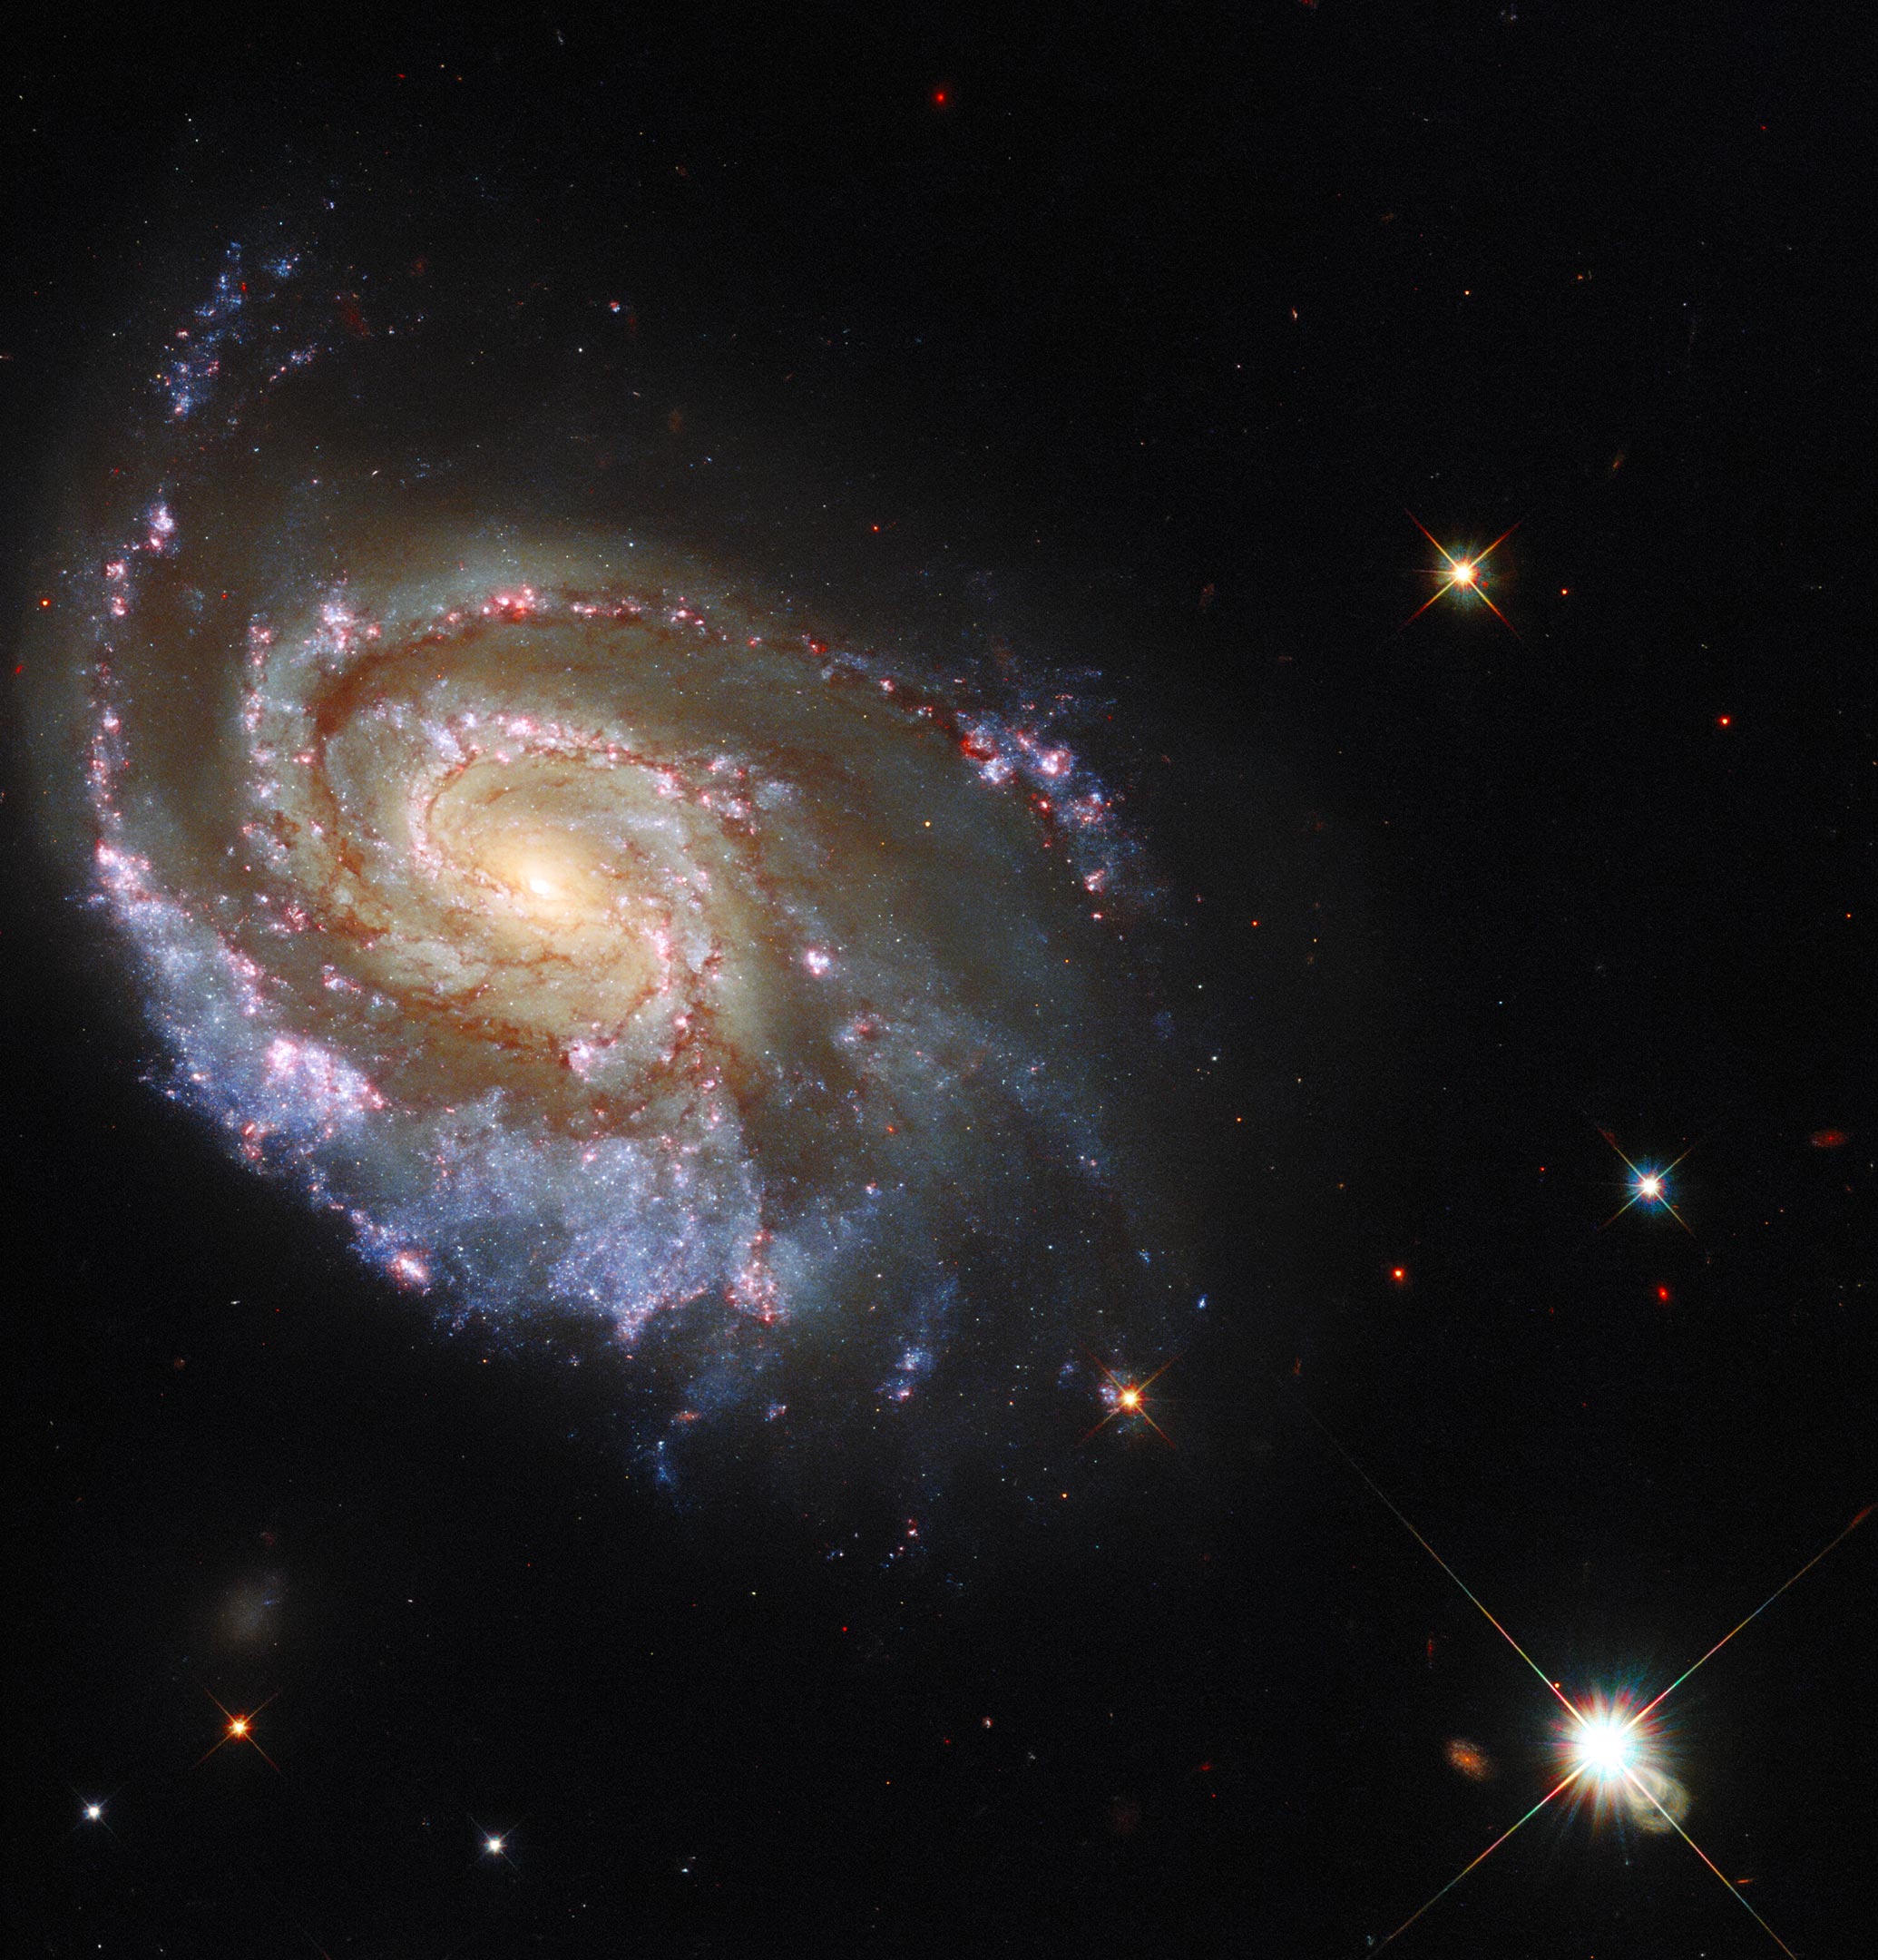 6984星系,这是一个优雅的螺旋星系,位于离地球大约2亿光年的印第安座